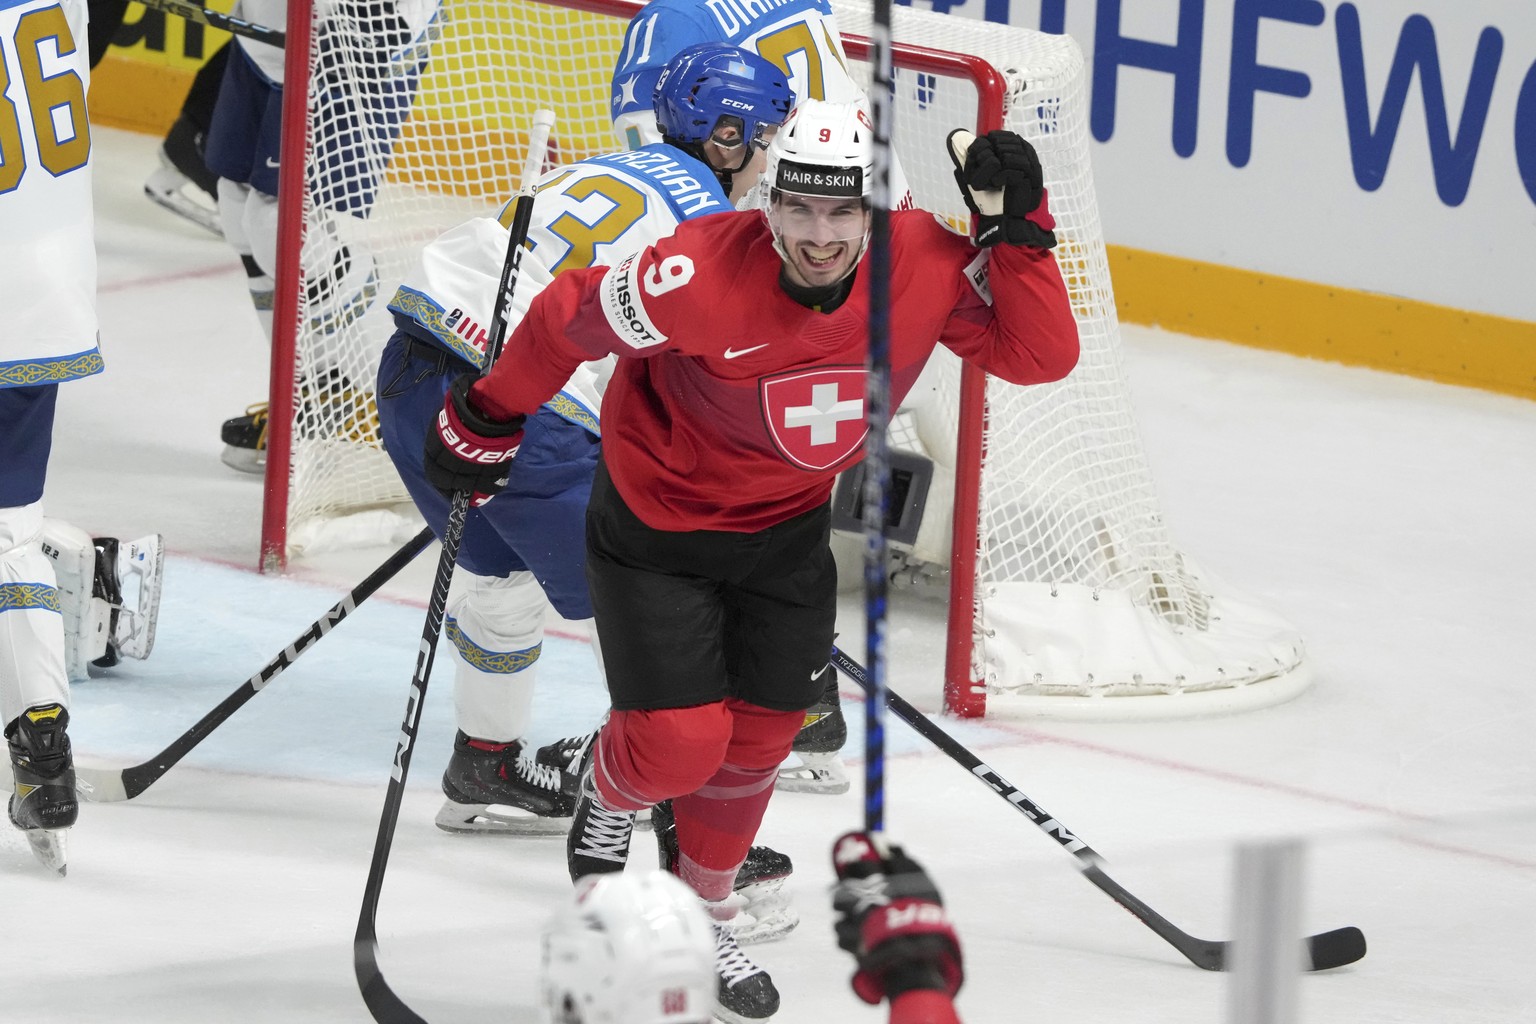 Eishockey-WM Schweiz schlägt auch Kasachstan zu Null